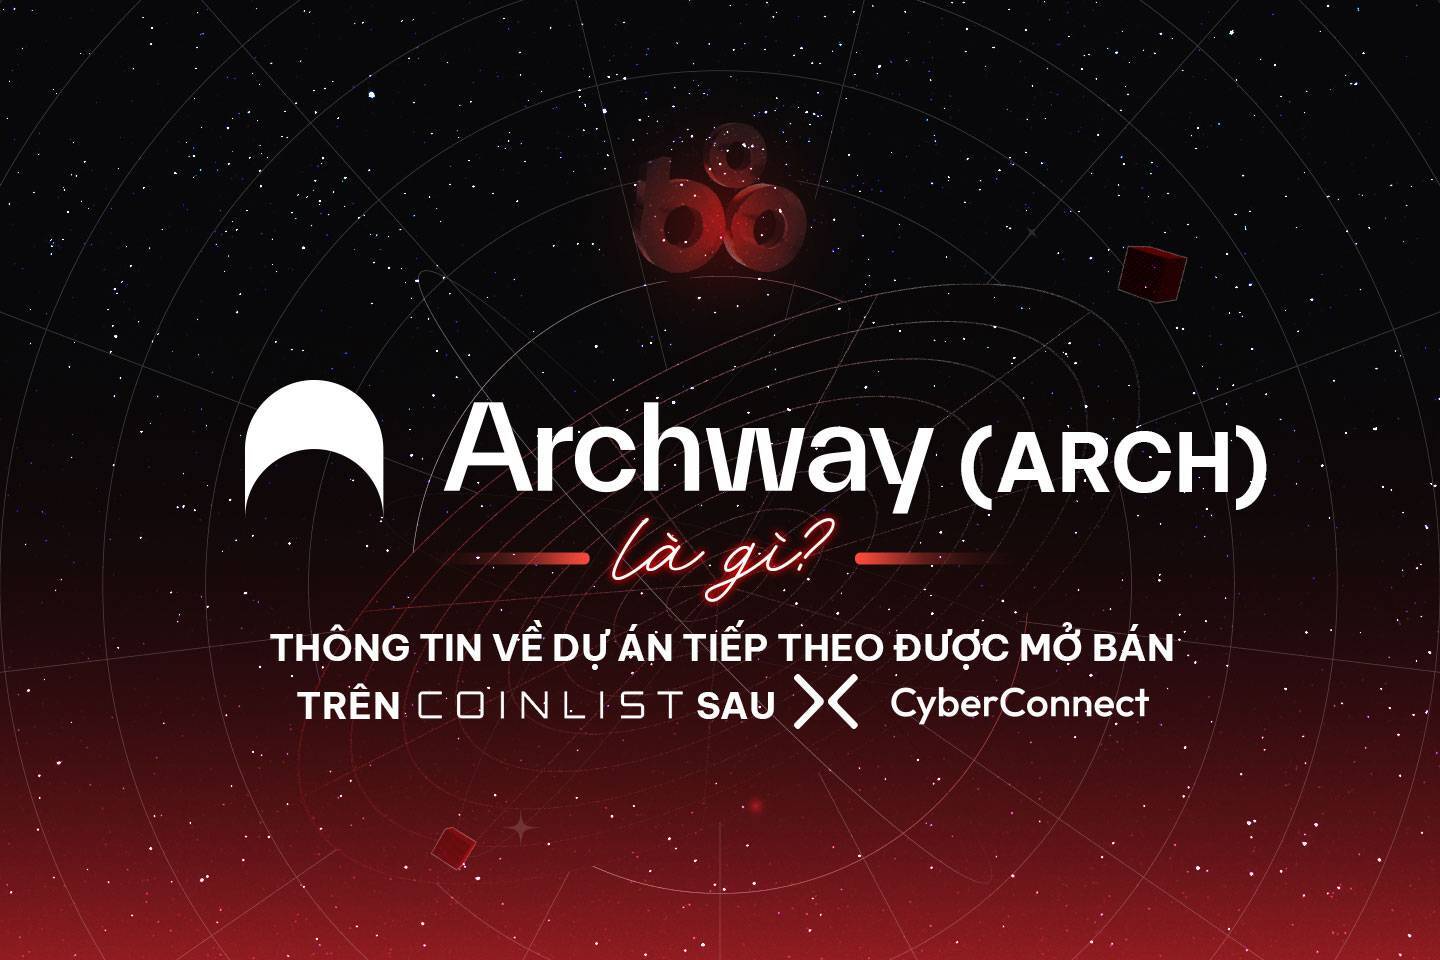 Archway arch Là Gì Thông Tin Về Dự Án Tiếp Theo Được Mở Bán Trên Coinlist